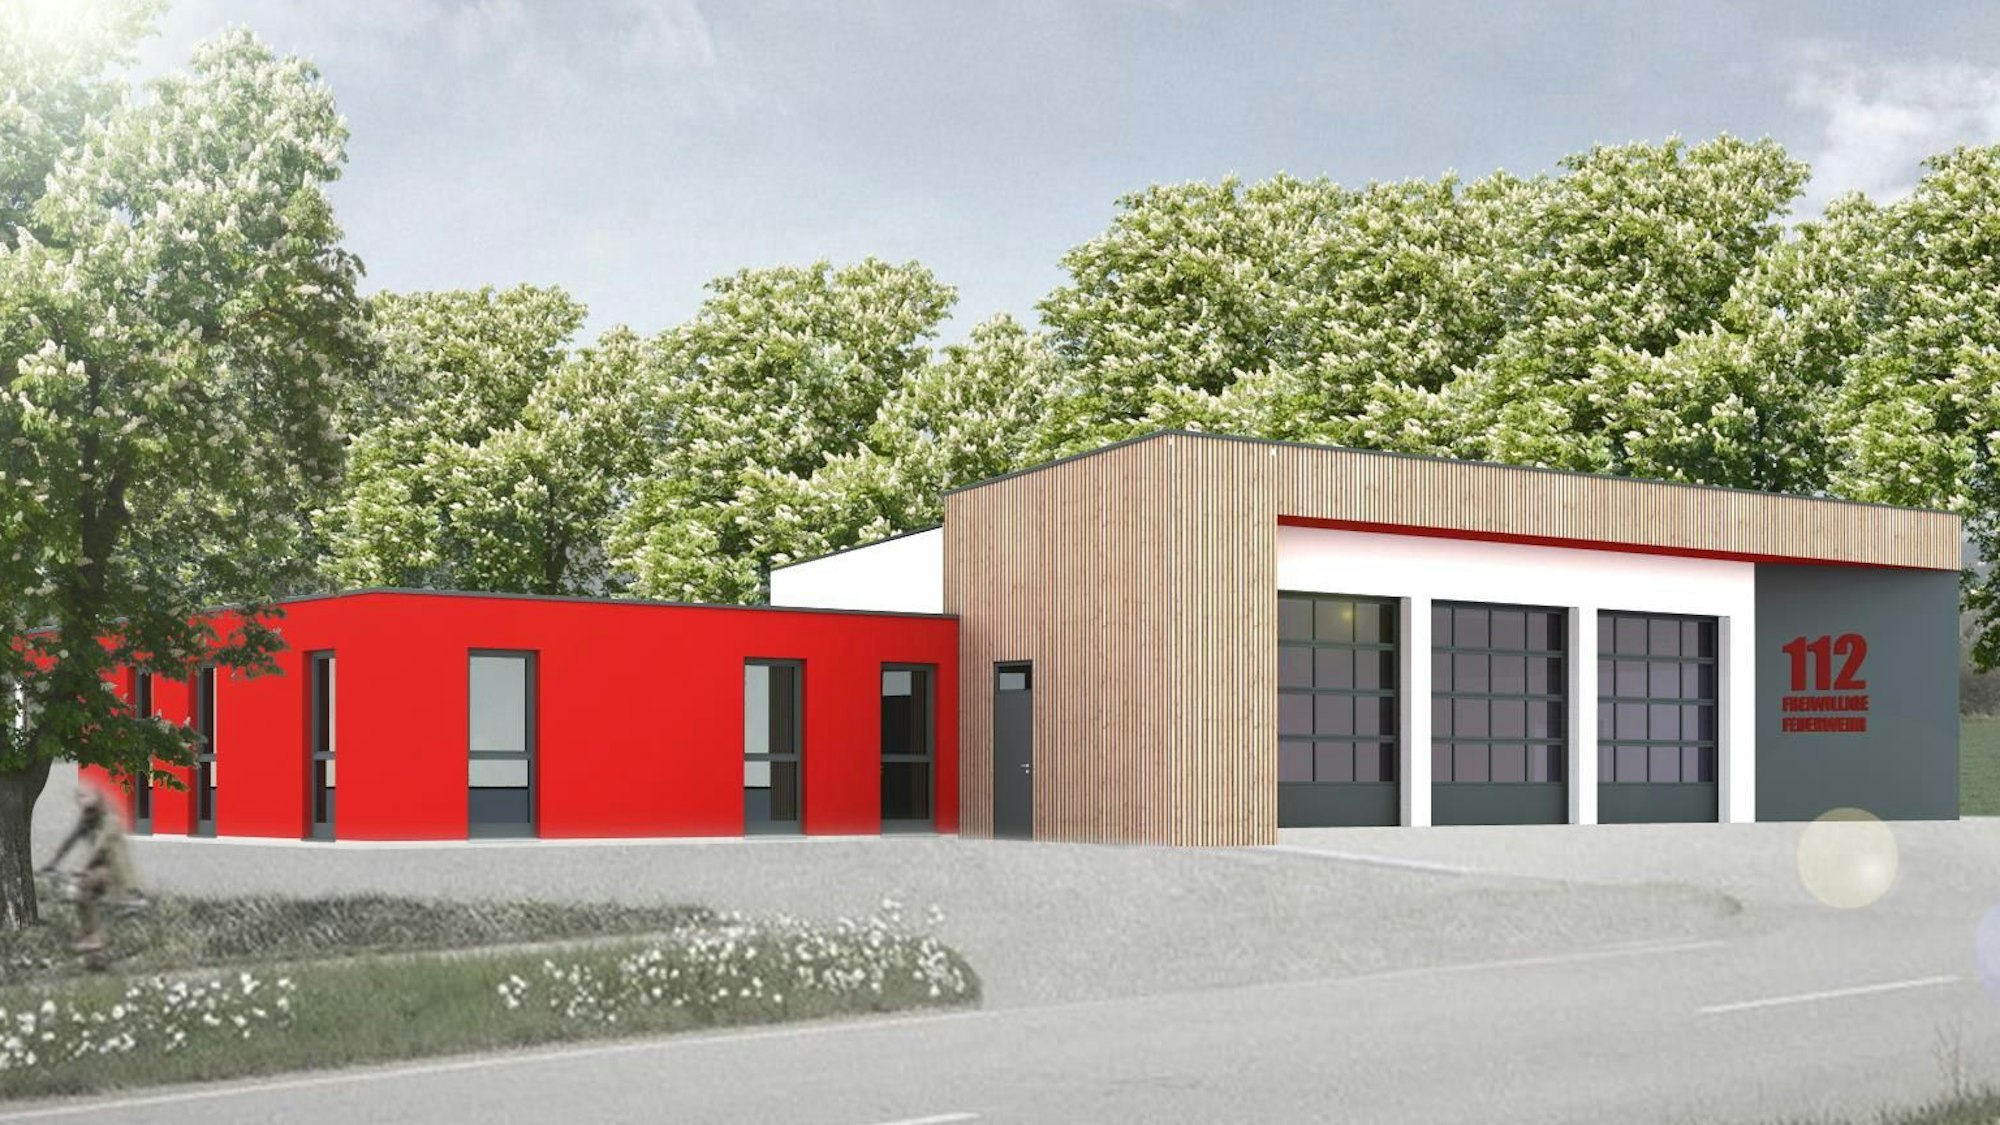 Die Visualisierung zeigt, wie das neue Feuerwehrgerätehaus in herhahn aussehen könnte.